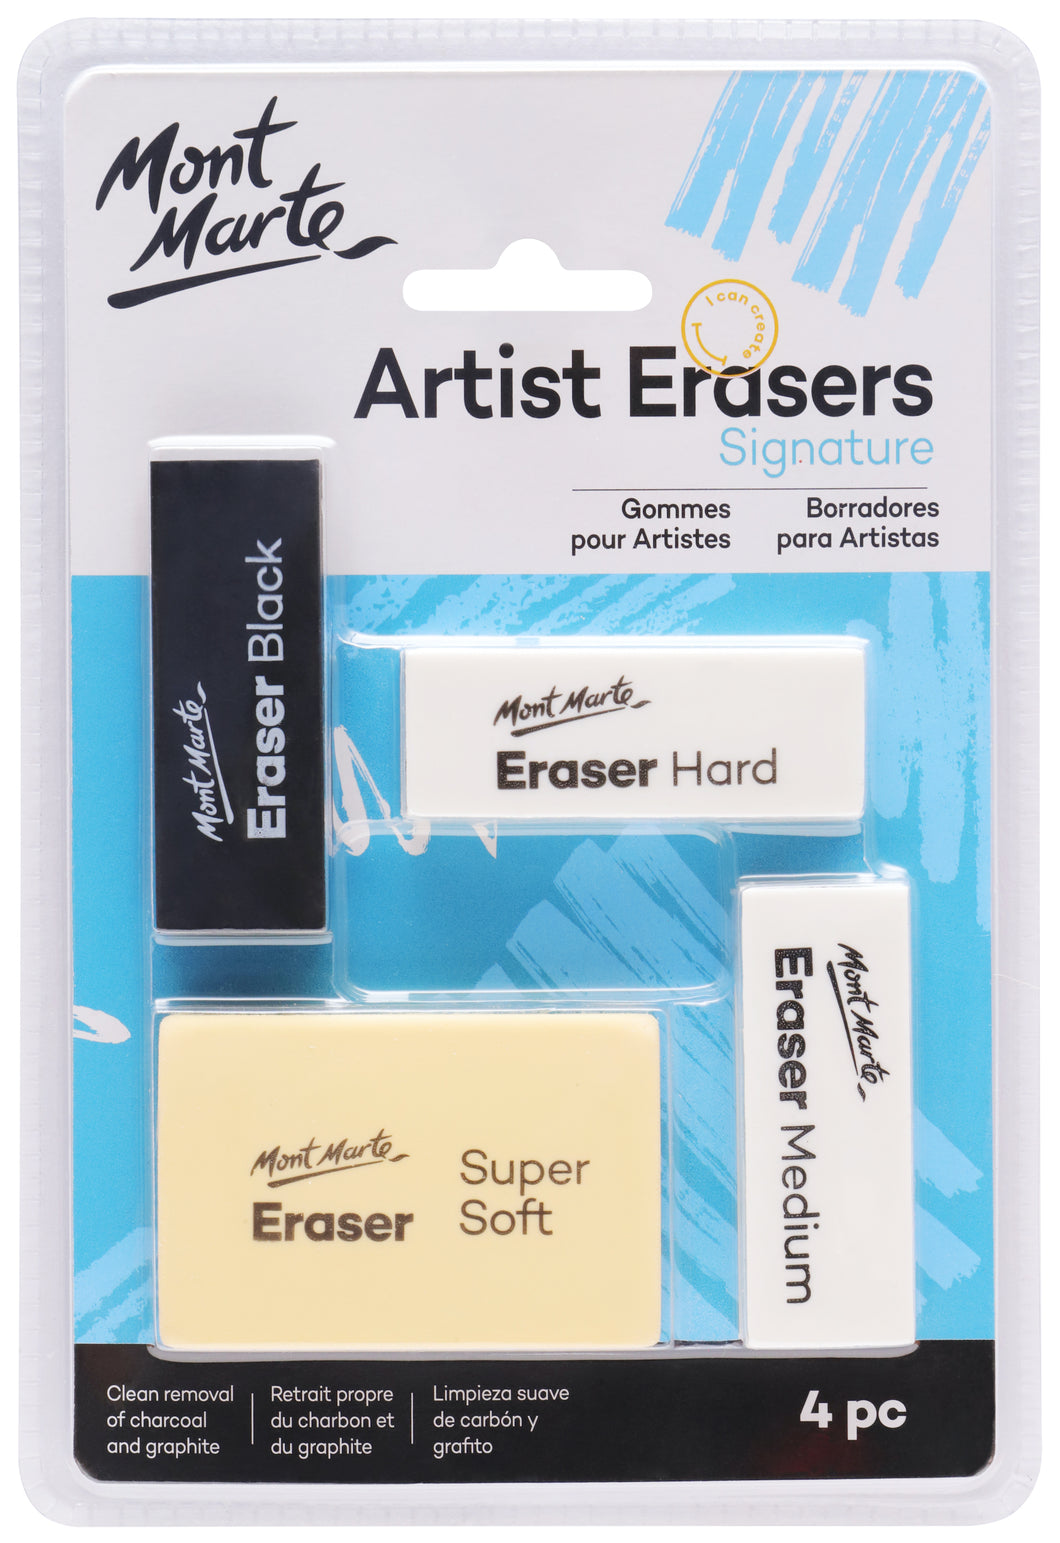 Monte Marte Artist Erasers Pack 4pc